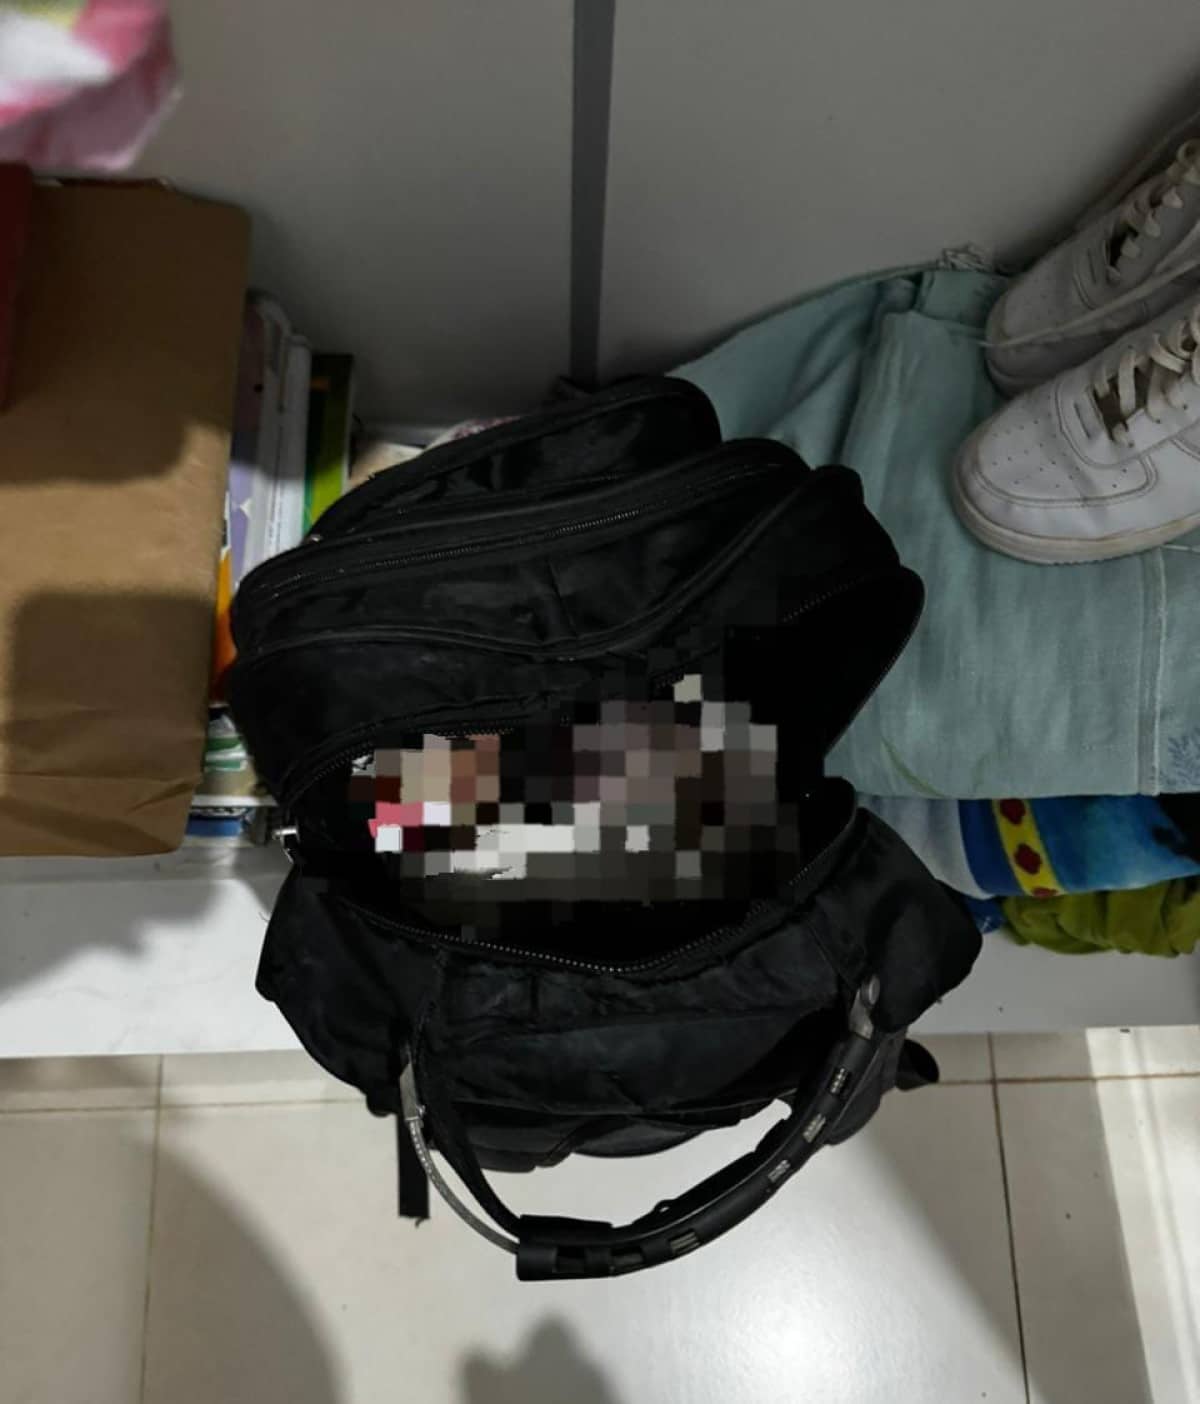 Adolescente confessa ter abortado e escondido feto em mochila